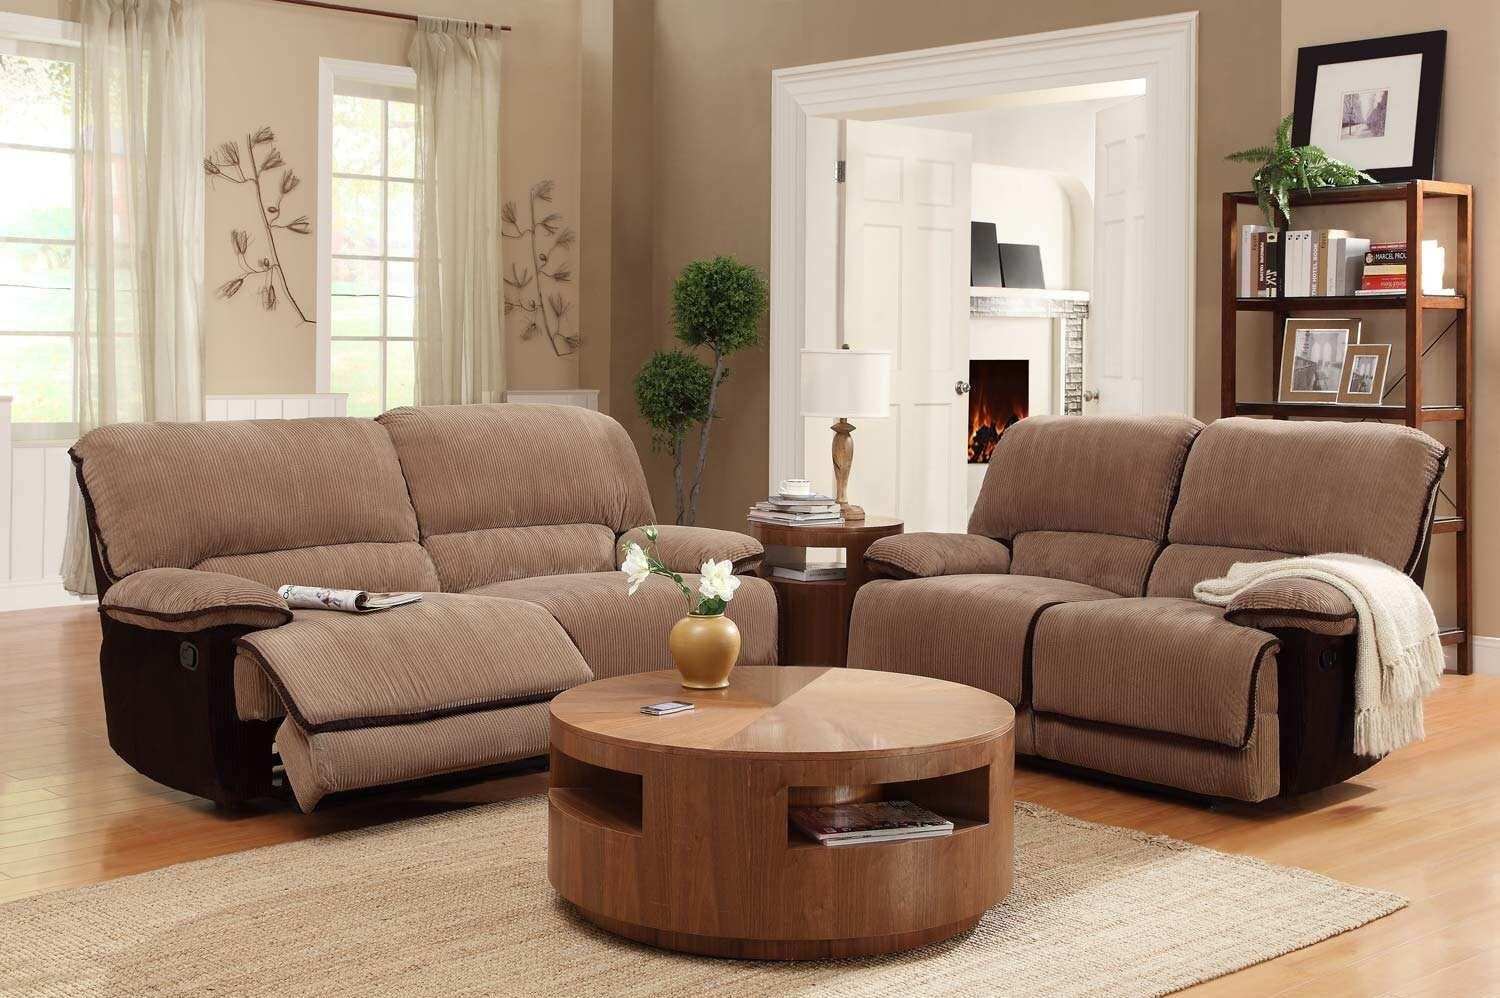 客厅要安装多么长的沙发合适  摆放沙发注意哪些方面